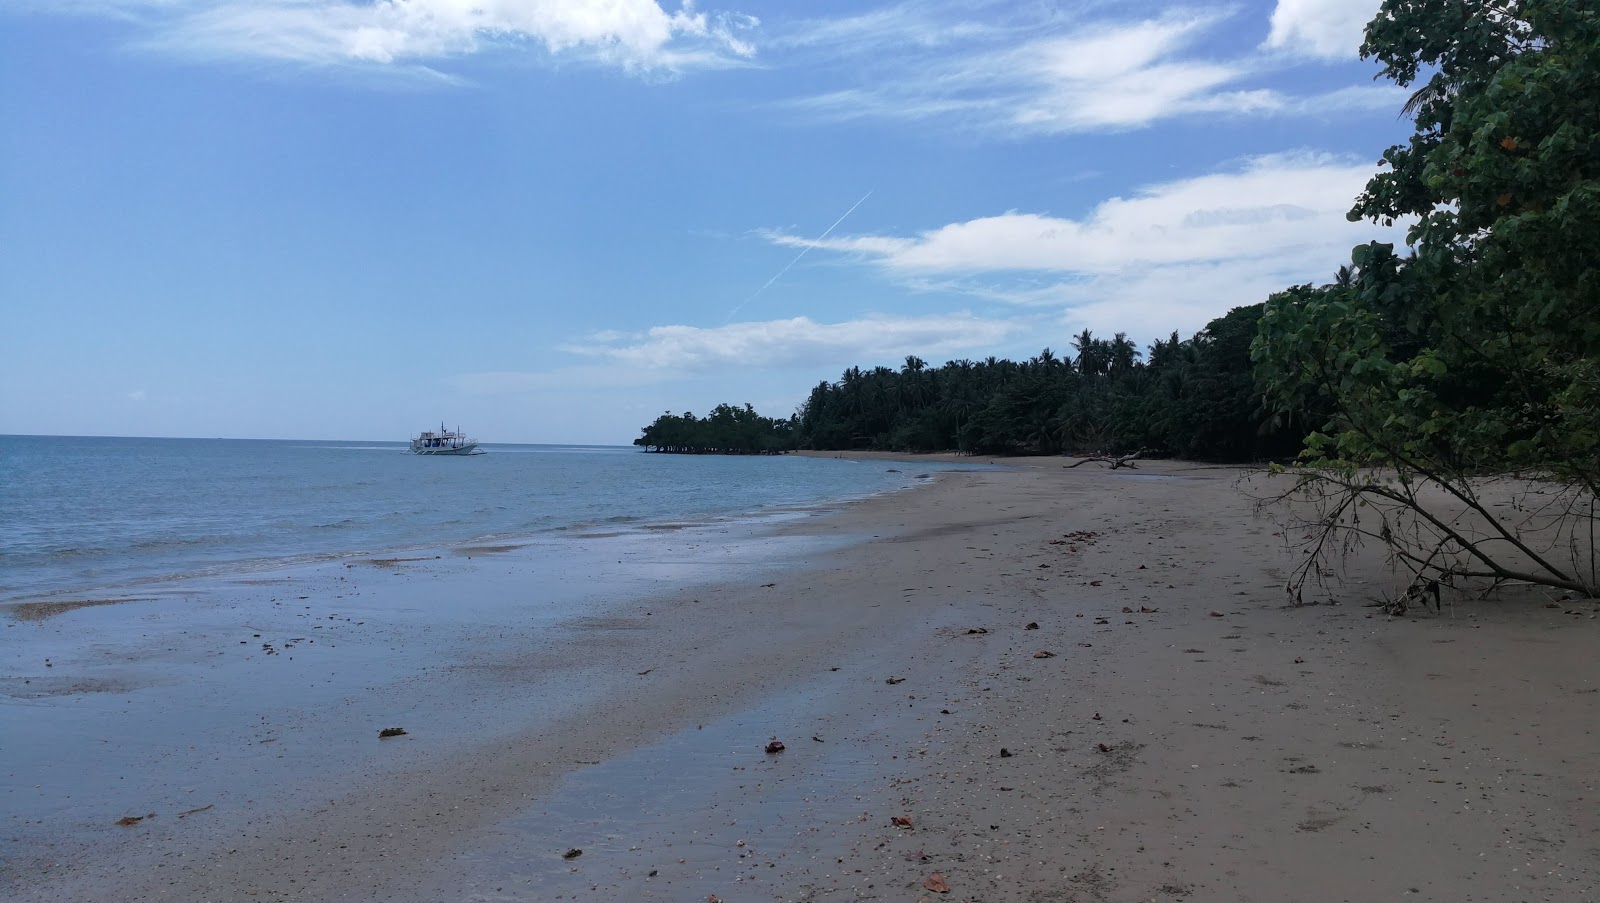 Zdjęcie Langogan Beach z przestronna plaża